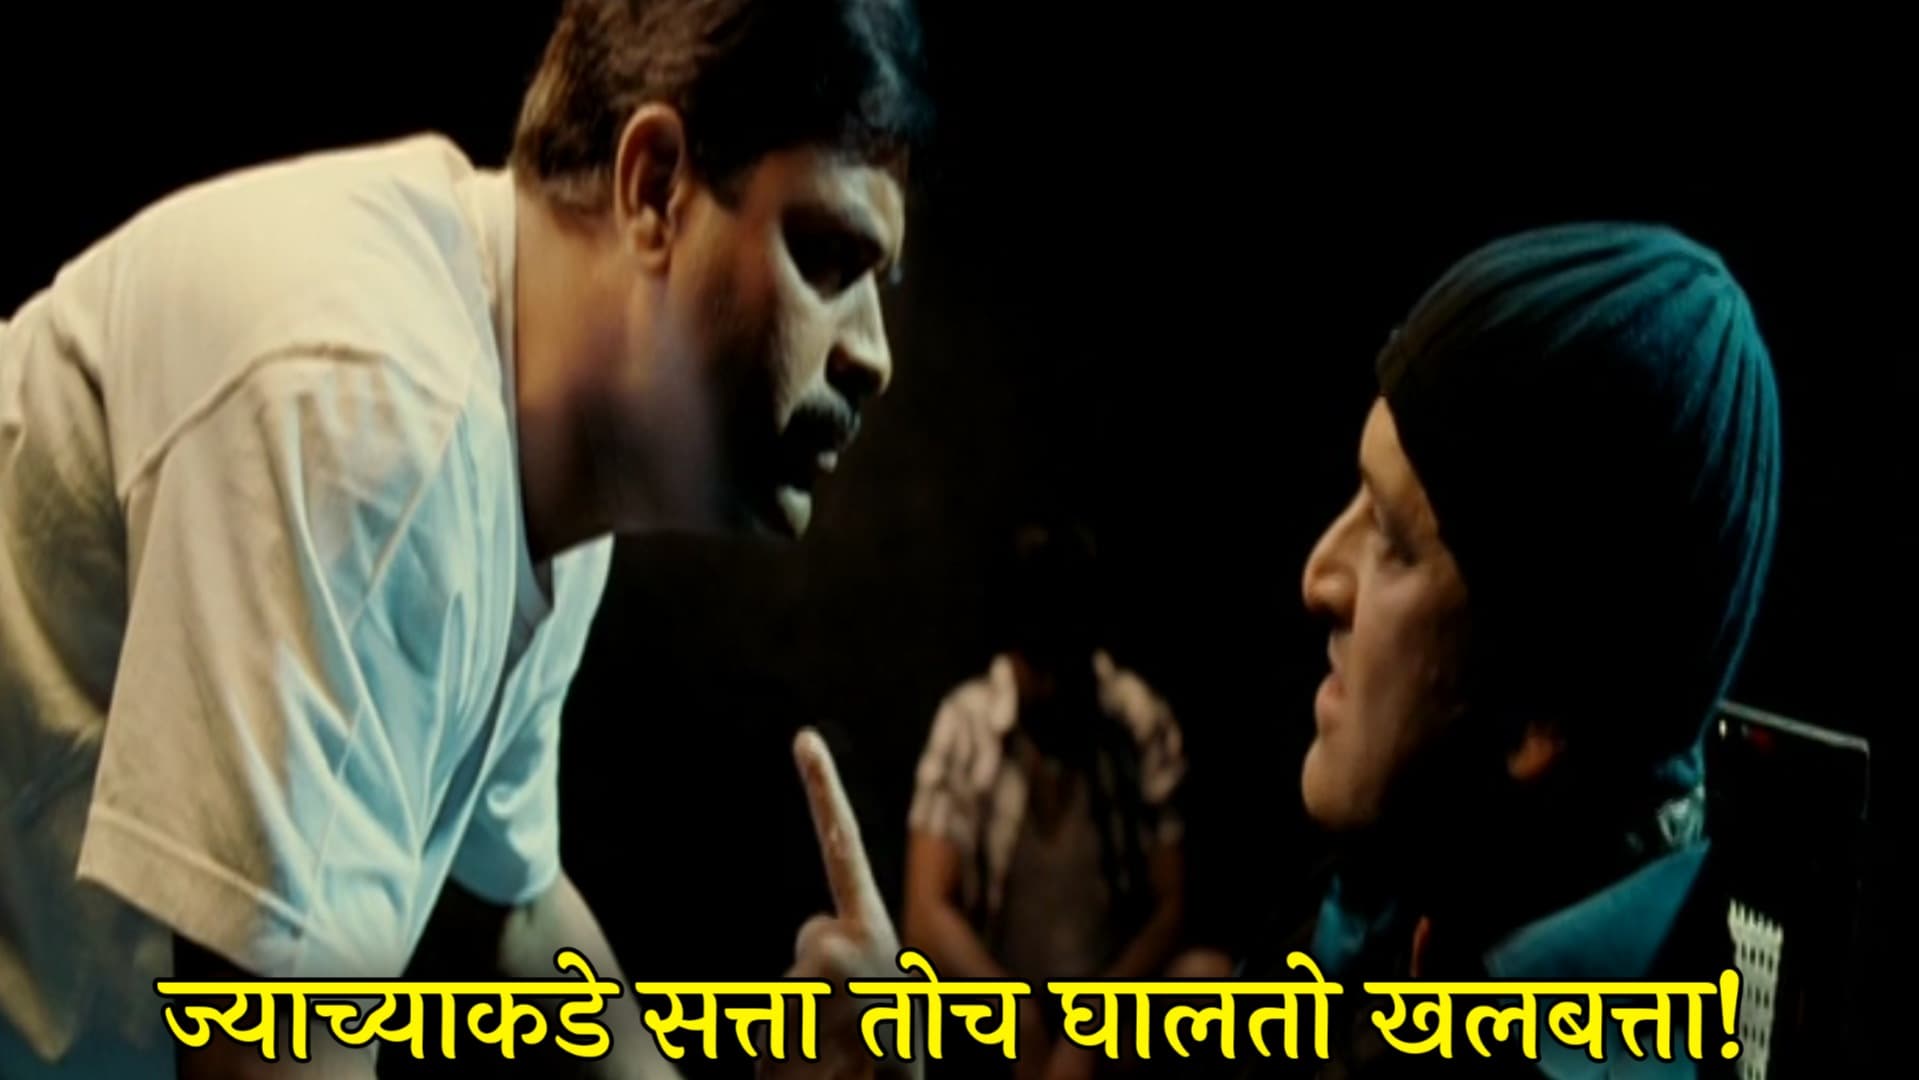 Mahesh Manjrekar Bharat Jadhav Fakta Ladh Mhana Marathi Movie Meme Template